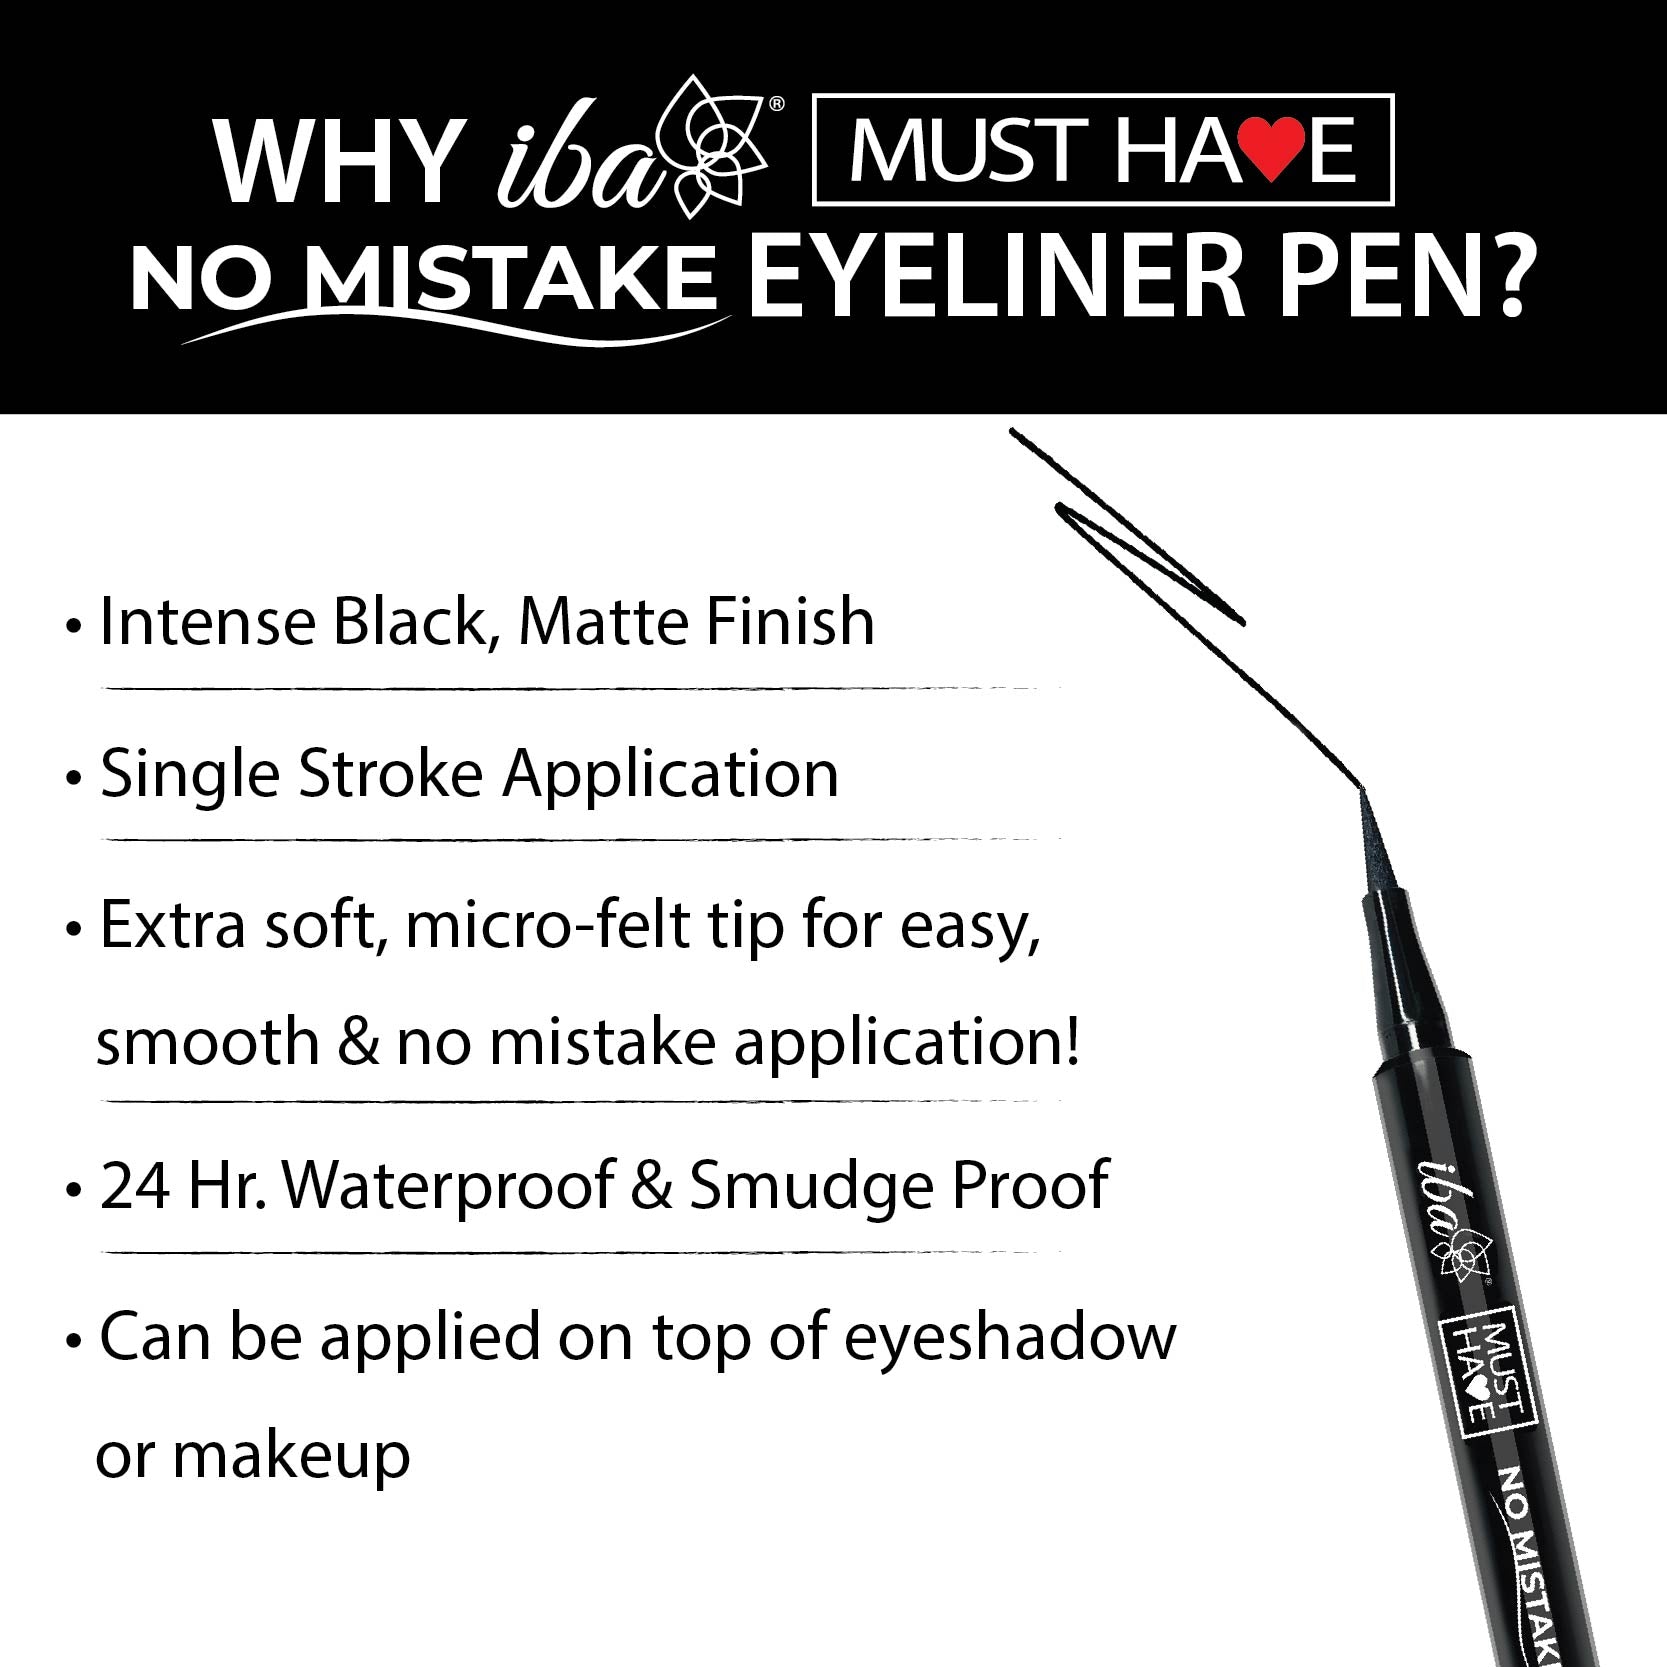 Buy Waterproof Eyeliner Pen Online at Offer Price - Iba Cosmetics